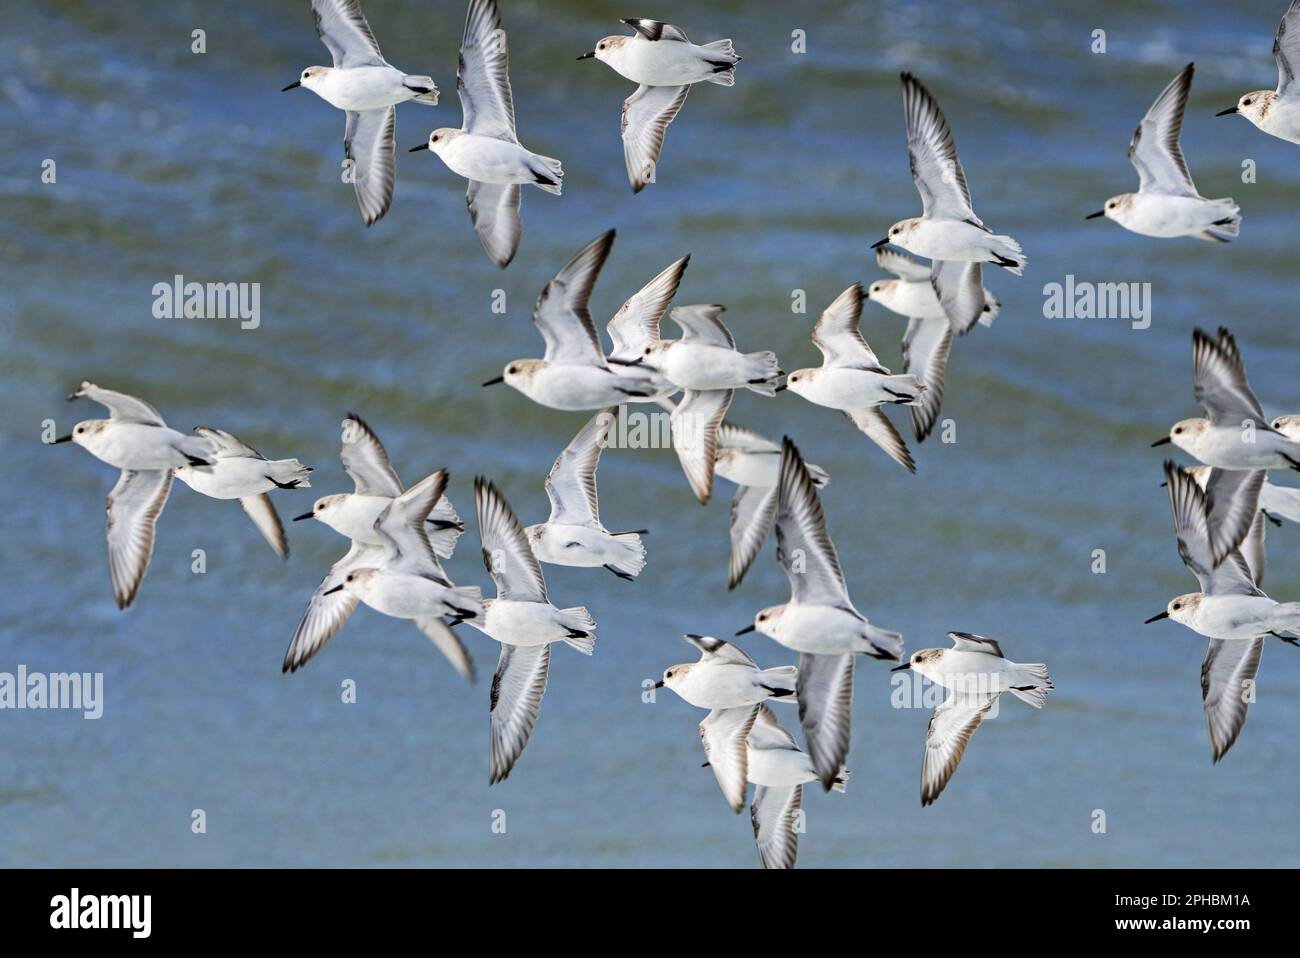 Troupeau d'oiseaux migrateurs de sanderlings (Calidris alba) volant dans un plumage non reproductif par une journée venteuse pendant la tempête de la fin de l'hiver au début du printemps Banque D'Images